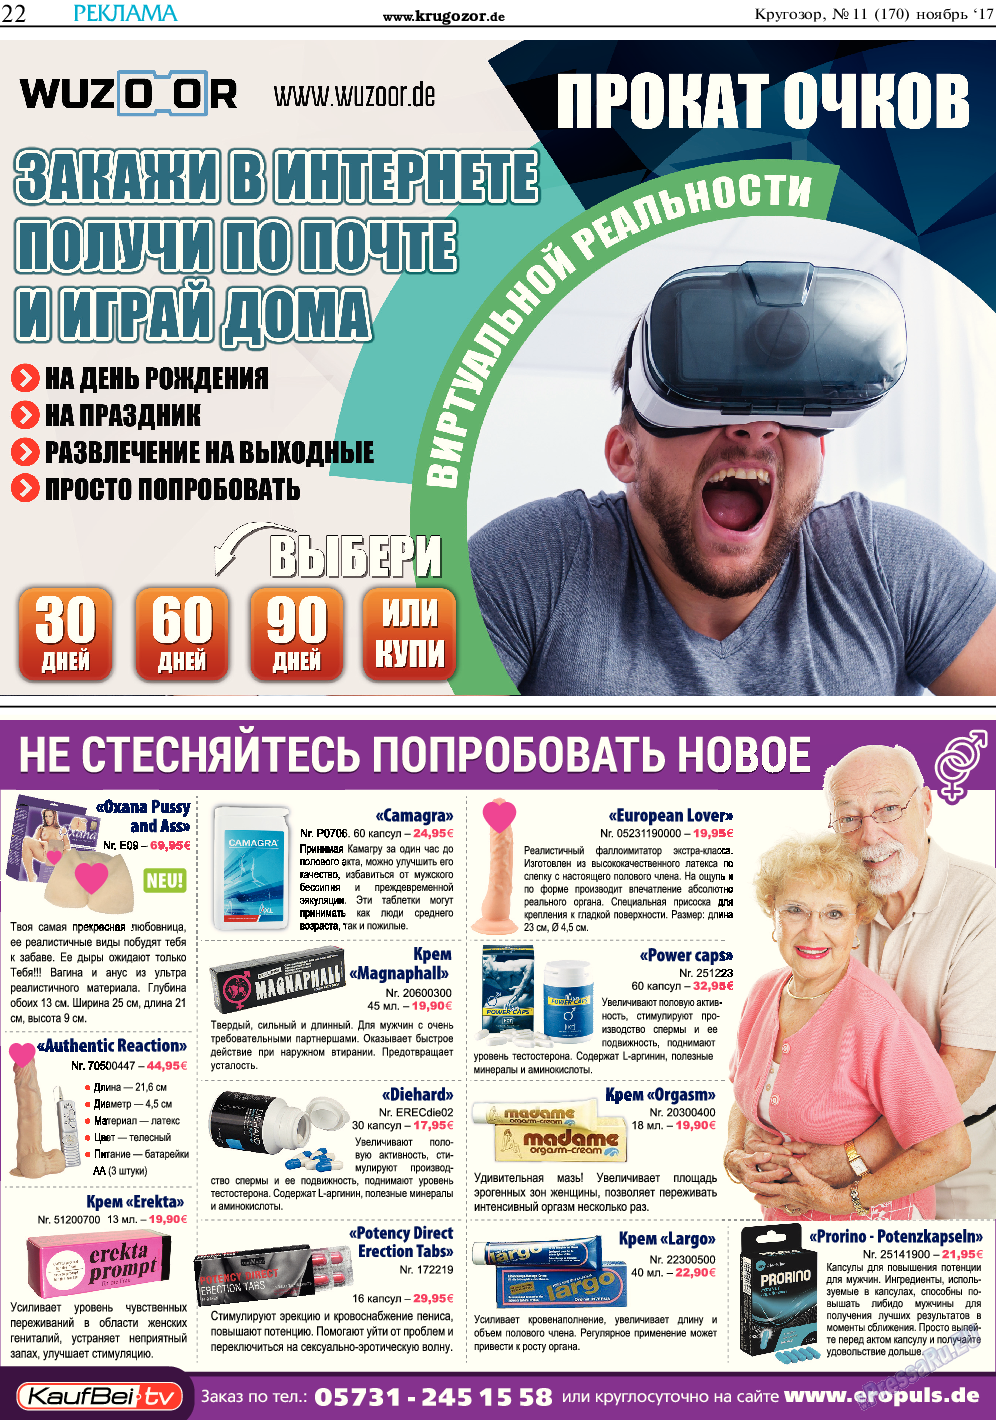 Кругозор, газета. 2017 №11 стр.22